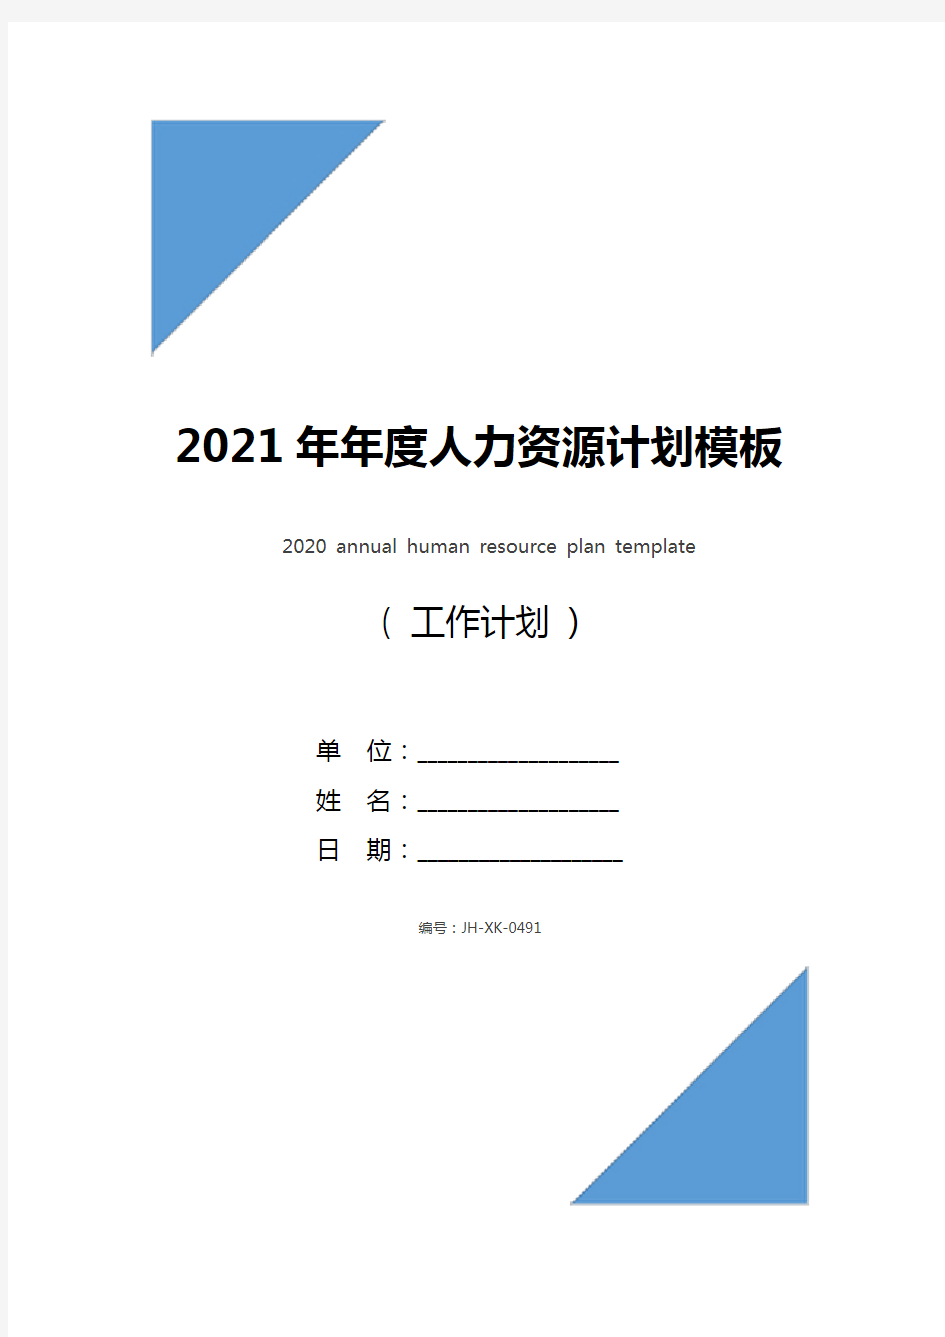 2021年年度人力资源计划模板(标准版)